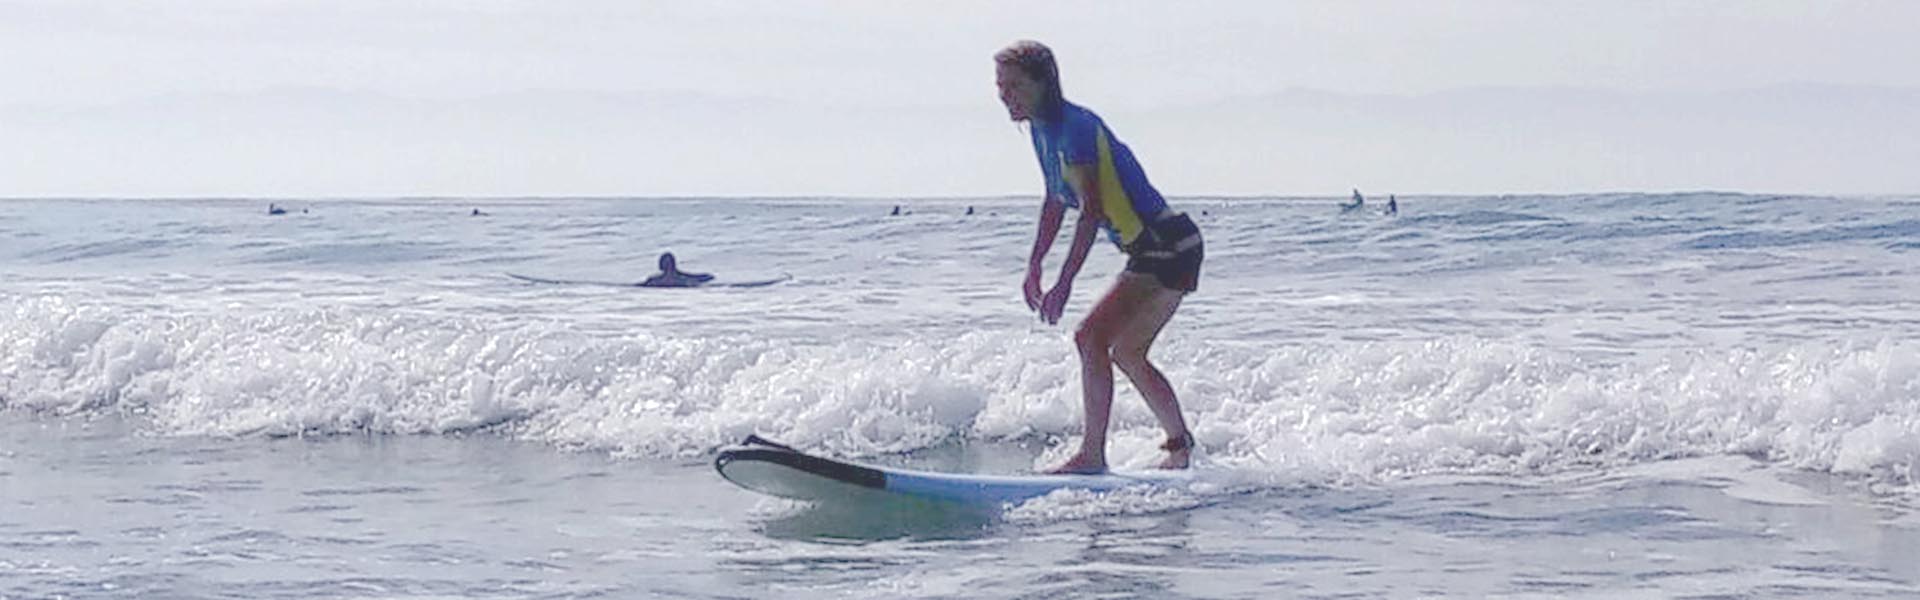 Puerto Vallarta Surf School | Puerto Vallarta Surf Lesson | Puerto Vallarta Stand Up Paddle Lessons